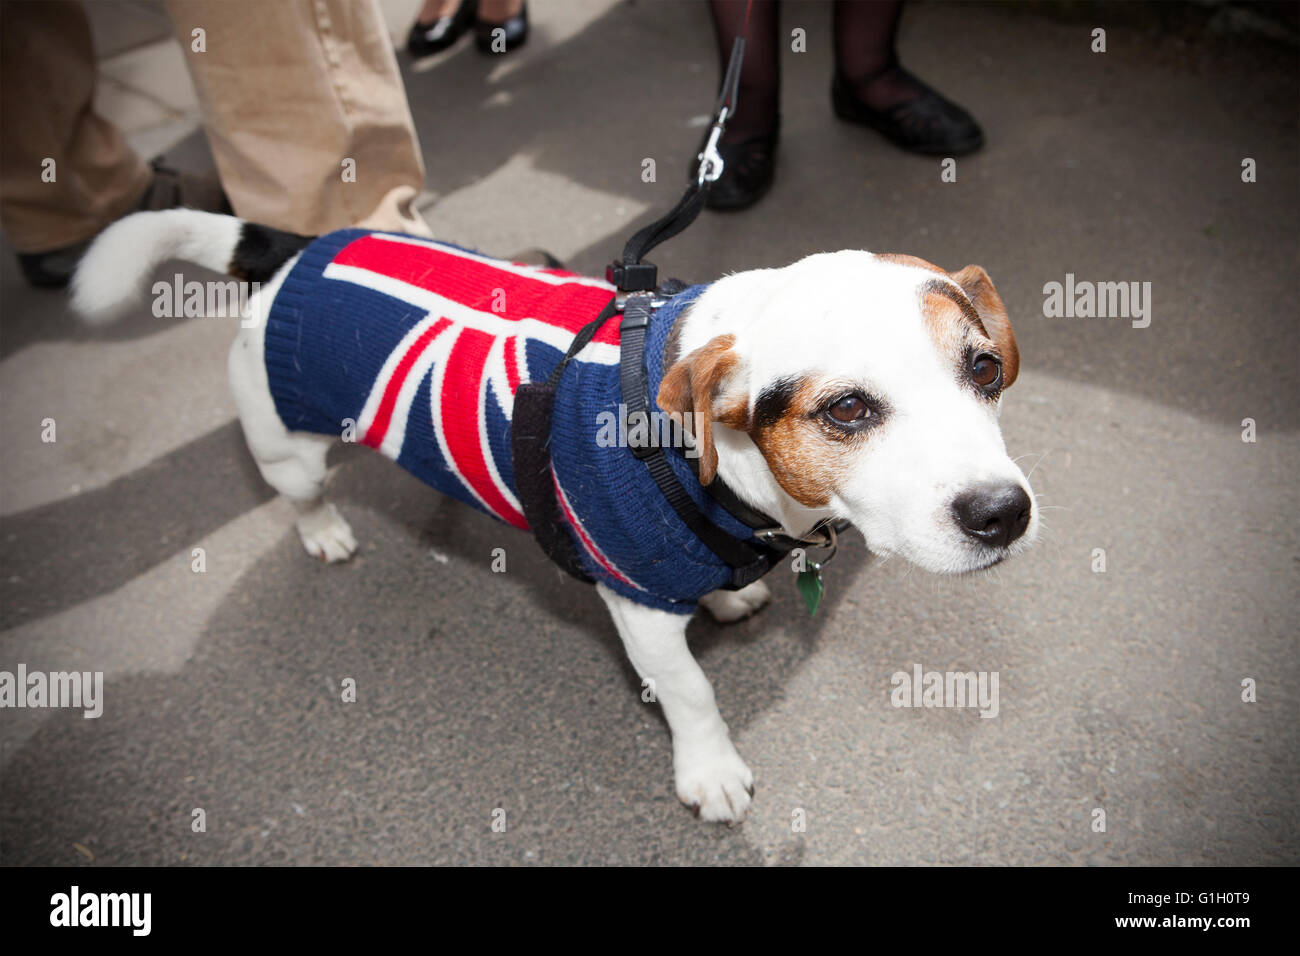 Ein Hund Union Jack England Flagge Regenmantel Mantel Hunde Hunde Rasse Tragen Tragen Von Pet Mantel Winter Wetter Warm Warme Pet Kleidung Stockfotografie Alamy